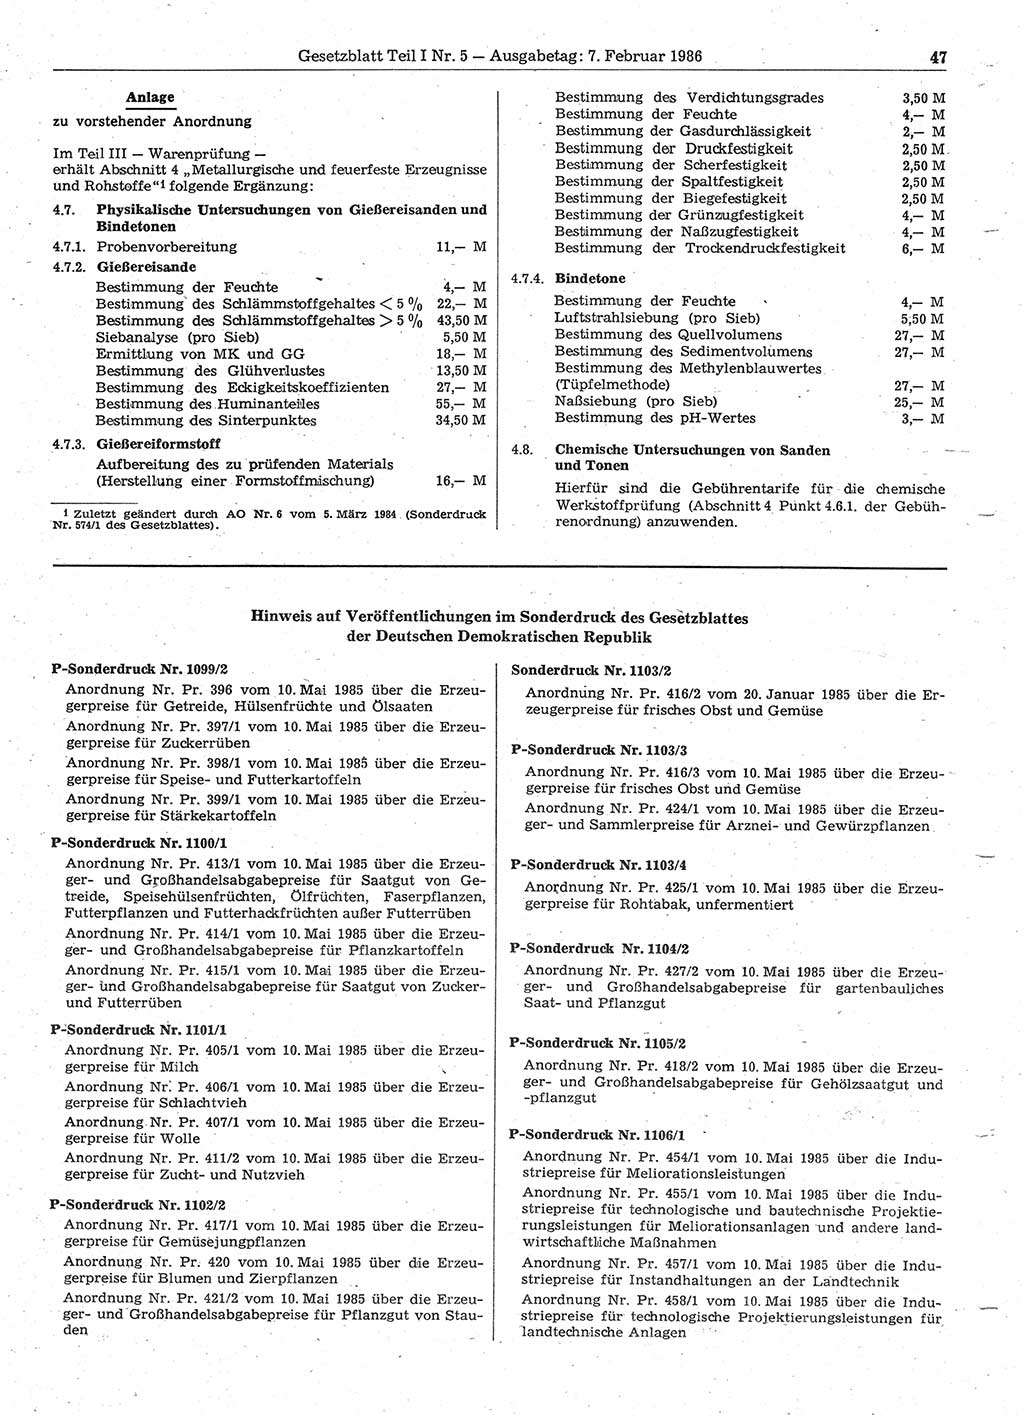 Gesetzblatt (GBl.) der Deutschen Demokratischen Republik (DDR) Teil Ⅰ 1986, Seite 47 (GBl. DDR Ⅰ 1986, S. 47)